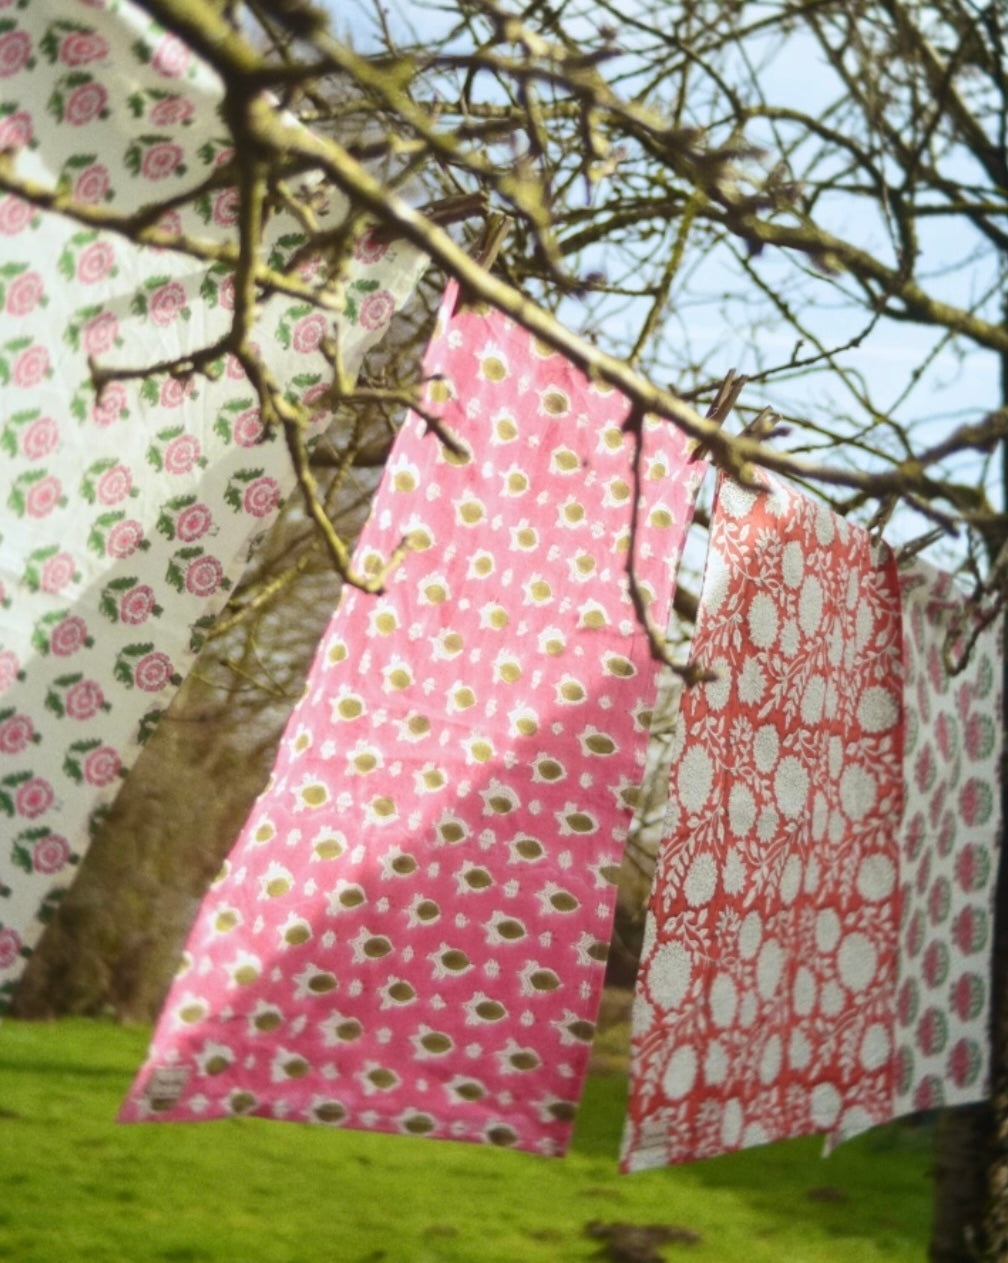 Indian Block Print Tea Towel - Pink and Green